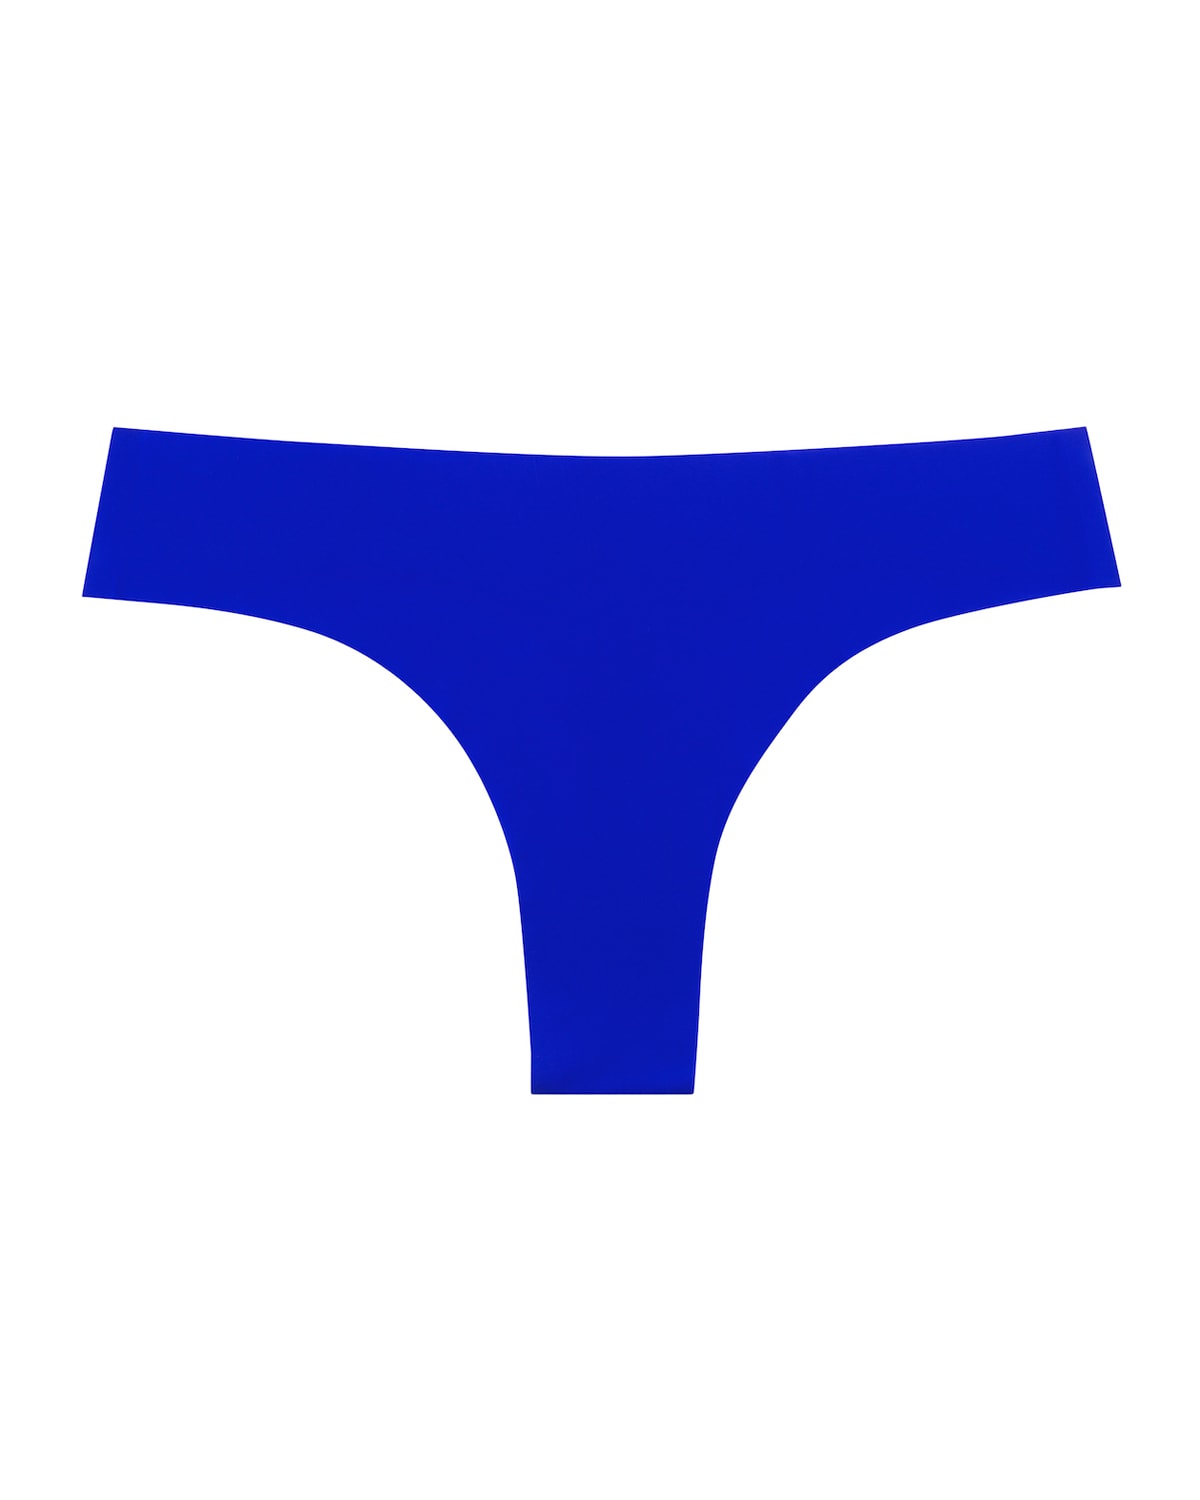 Uwila Warrior Vip Thong In Blue